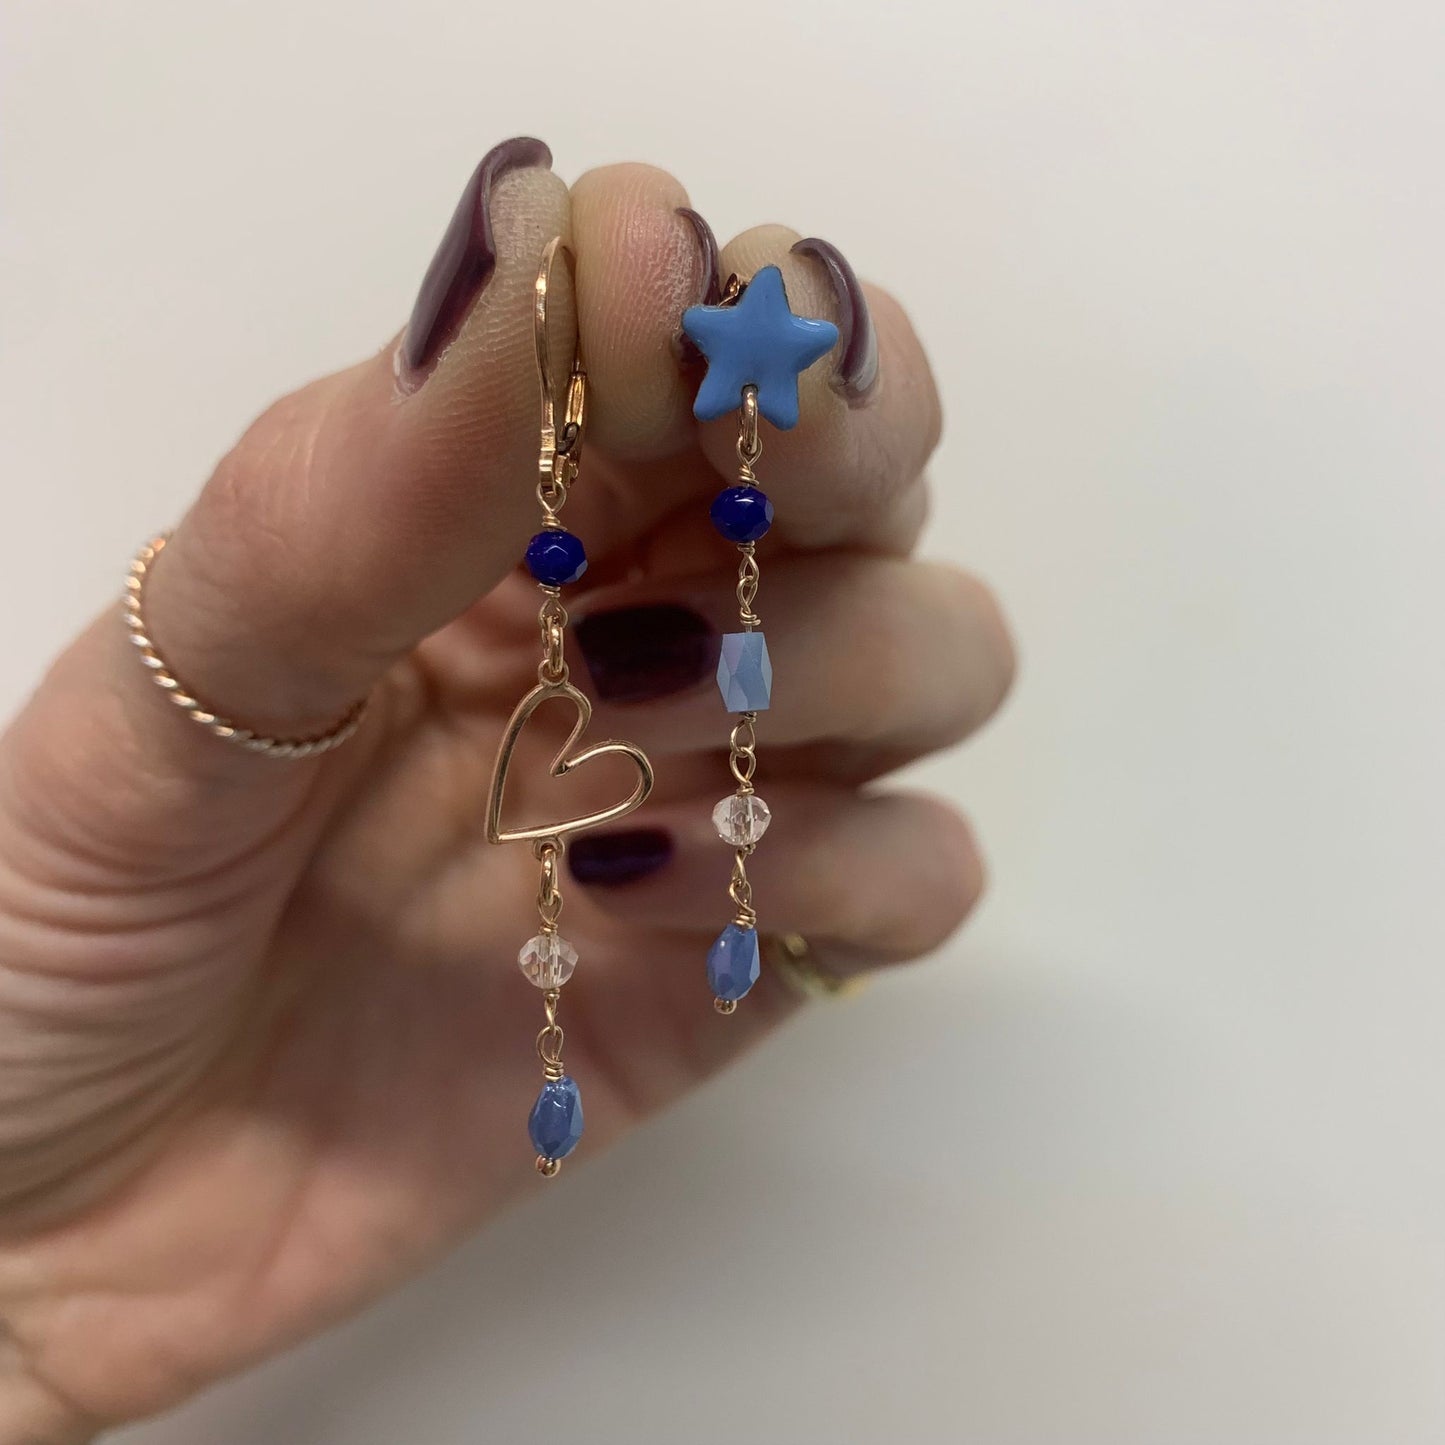 Coppia orecchini a lobo stella da 0,8 mm smaltata azzurro polvere, cuore mikonos e cristalli blu, azzurro polvere, trasparente - pezzo unico